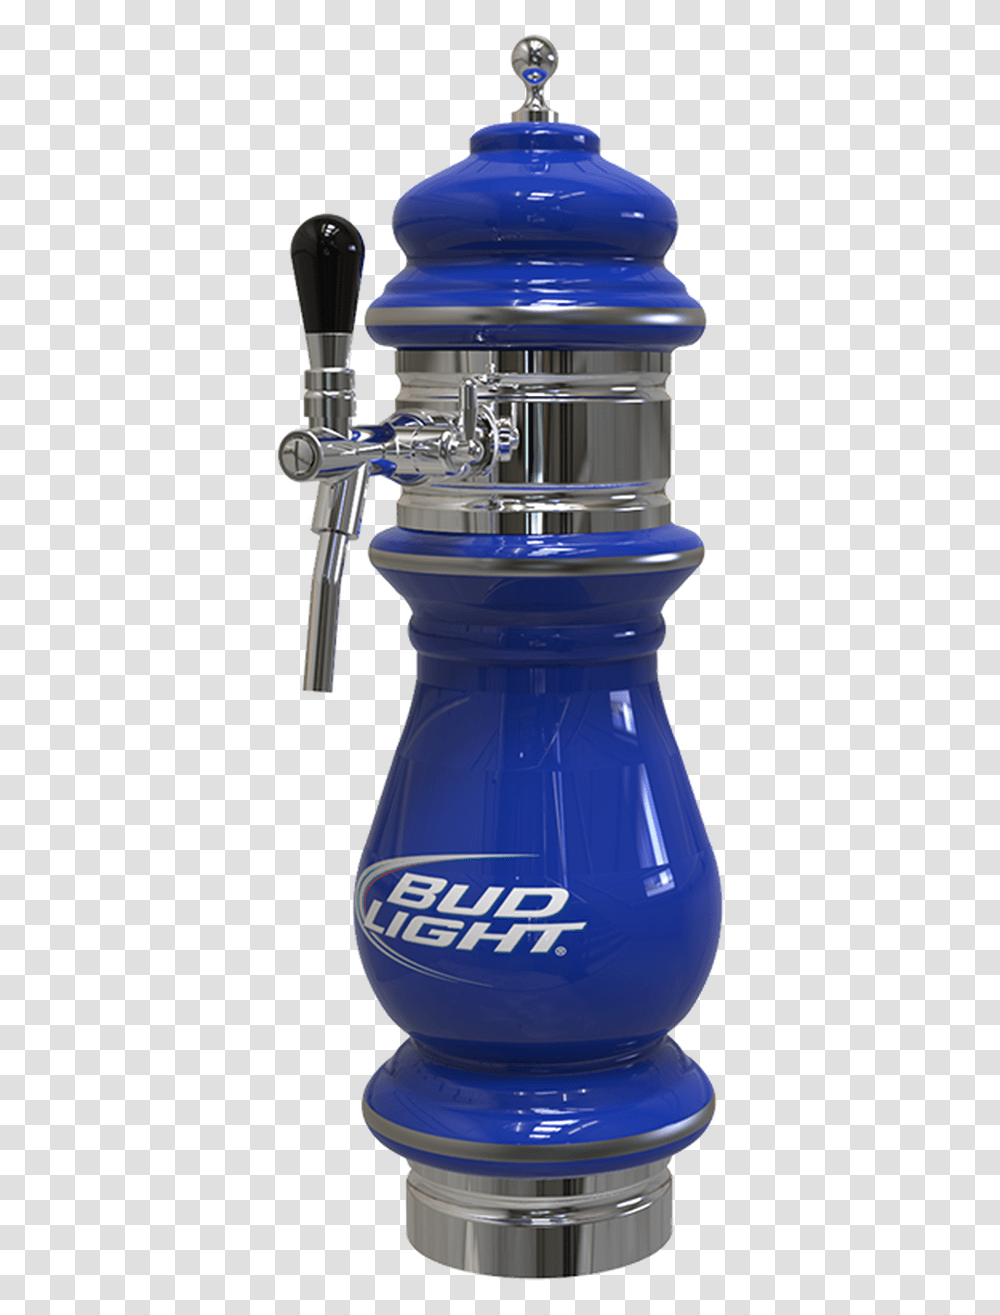 Ceramic Bud Light Beer Tower 1 3 Taps Cobalt Blue, Mixer, Appliance, Jar, Bottle Transparent Png